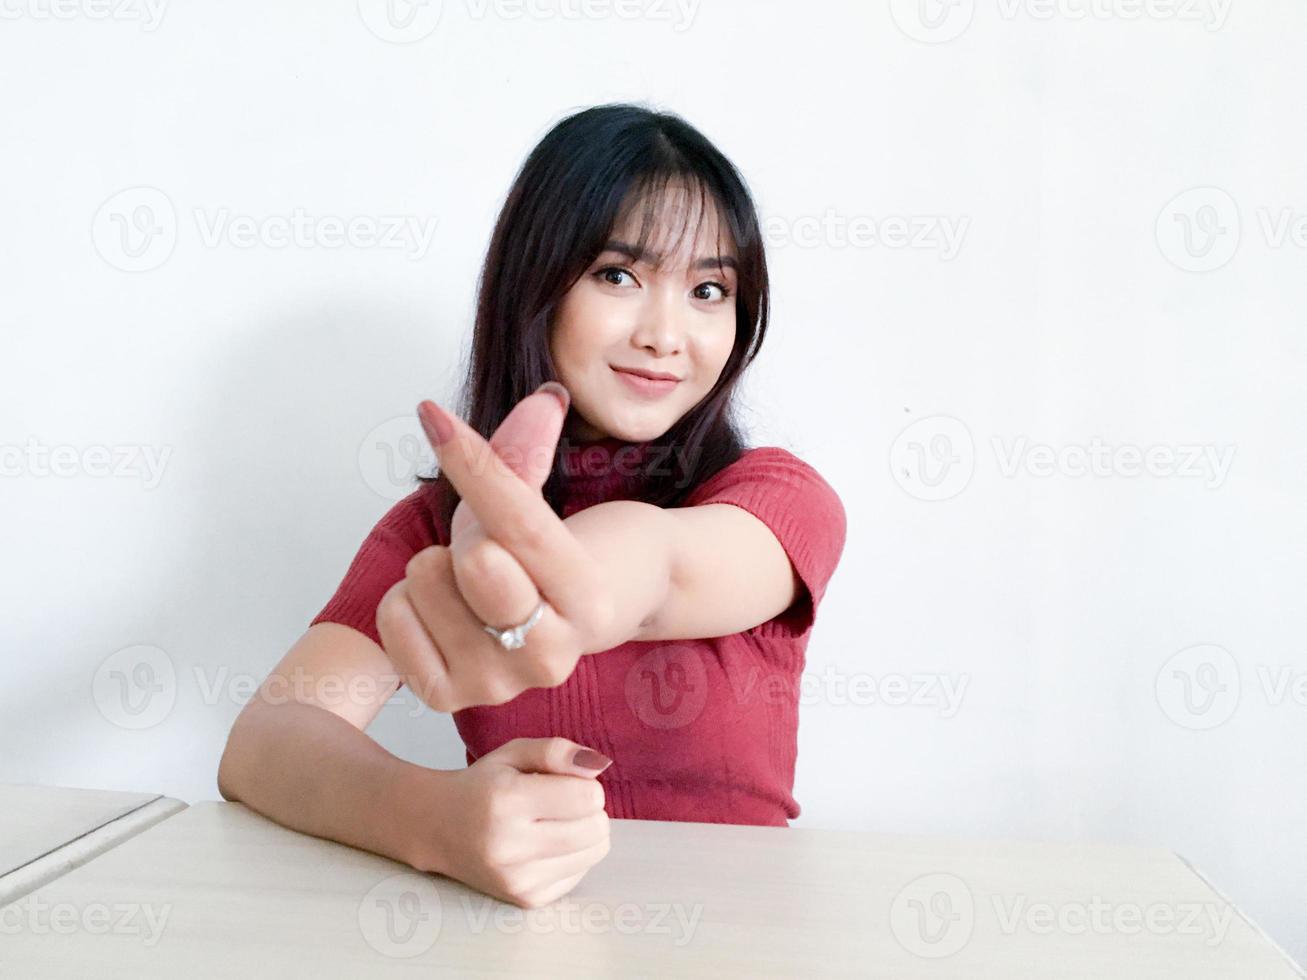 hermosa chica asiática sonriente mostrando el amor signo de corea con el dedo con fondo borroso fondo blanco aislado. mujeres indonesias foto